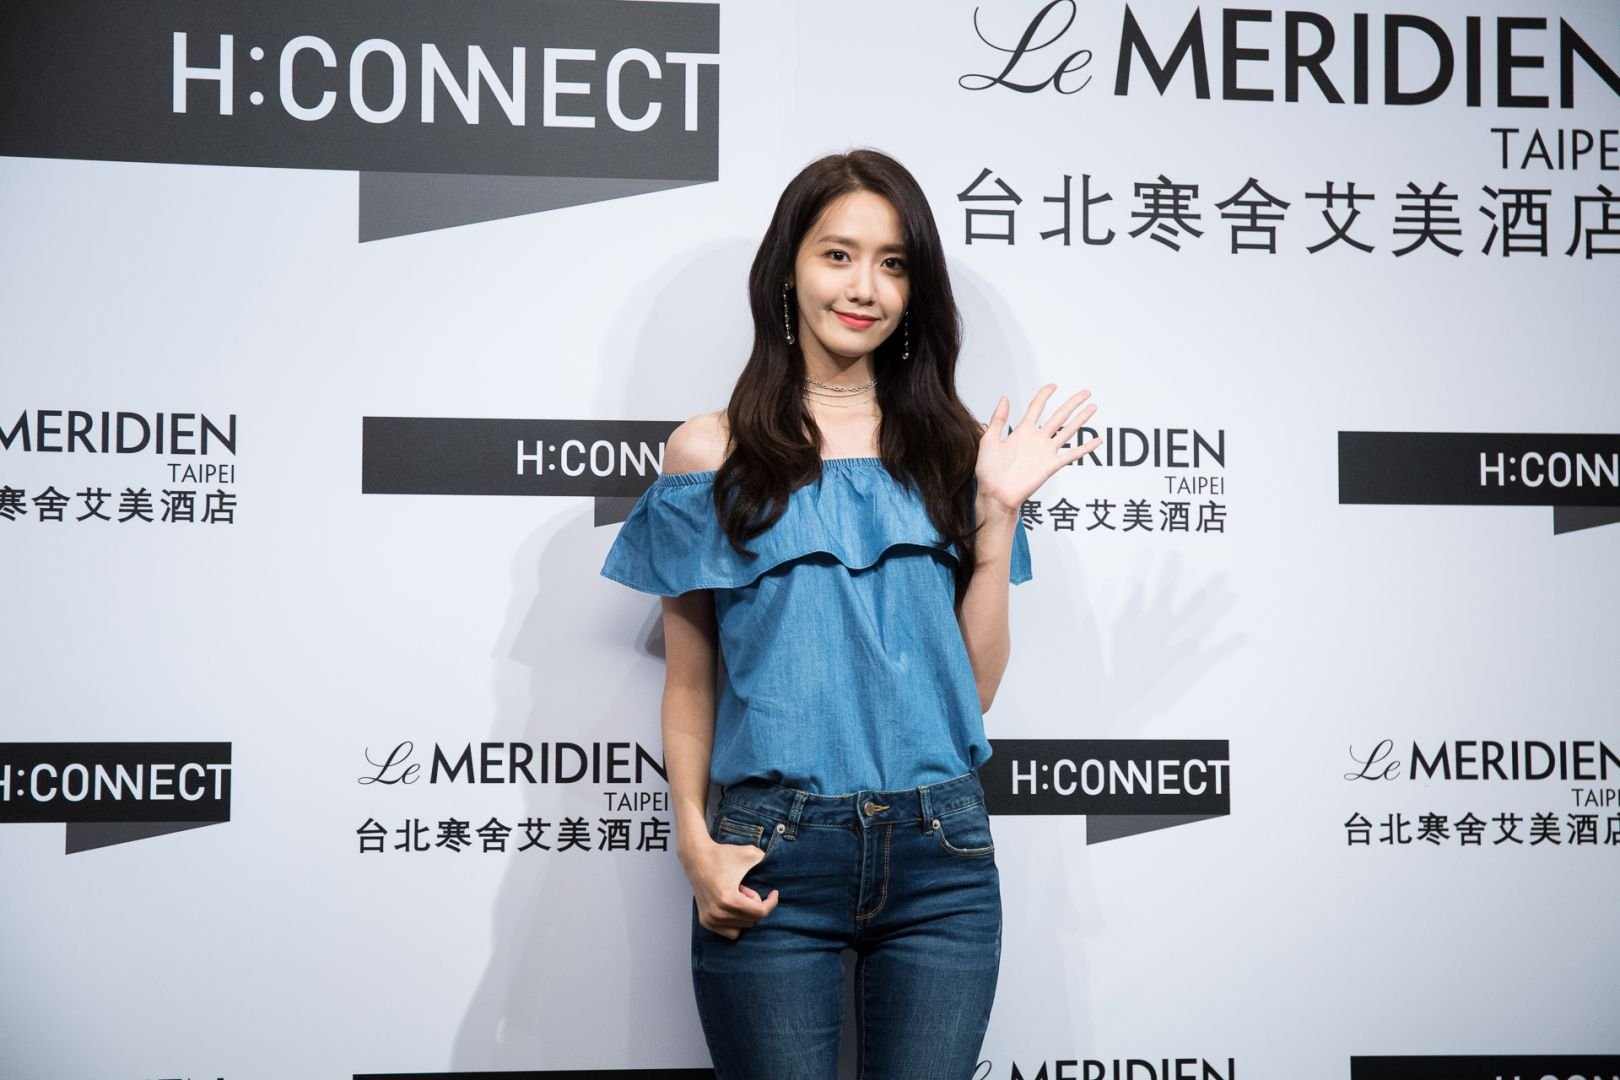 [PIC][22-07-2017]YoonA khởi hành đi Đài Loan để tham dự buổi Fanmeeting cho thương hiệu "H:CONNECT" vào hôm nay - Page 3 Z2Hrlh9hWN-3000x3000